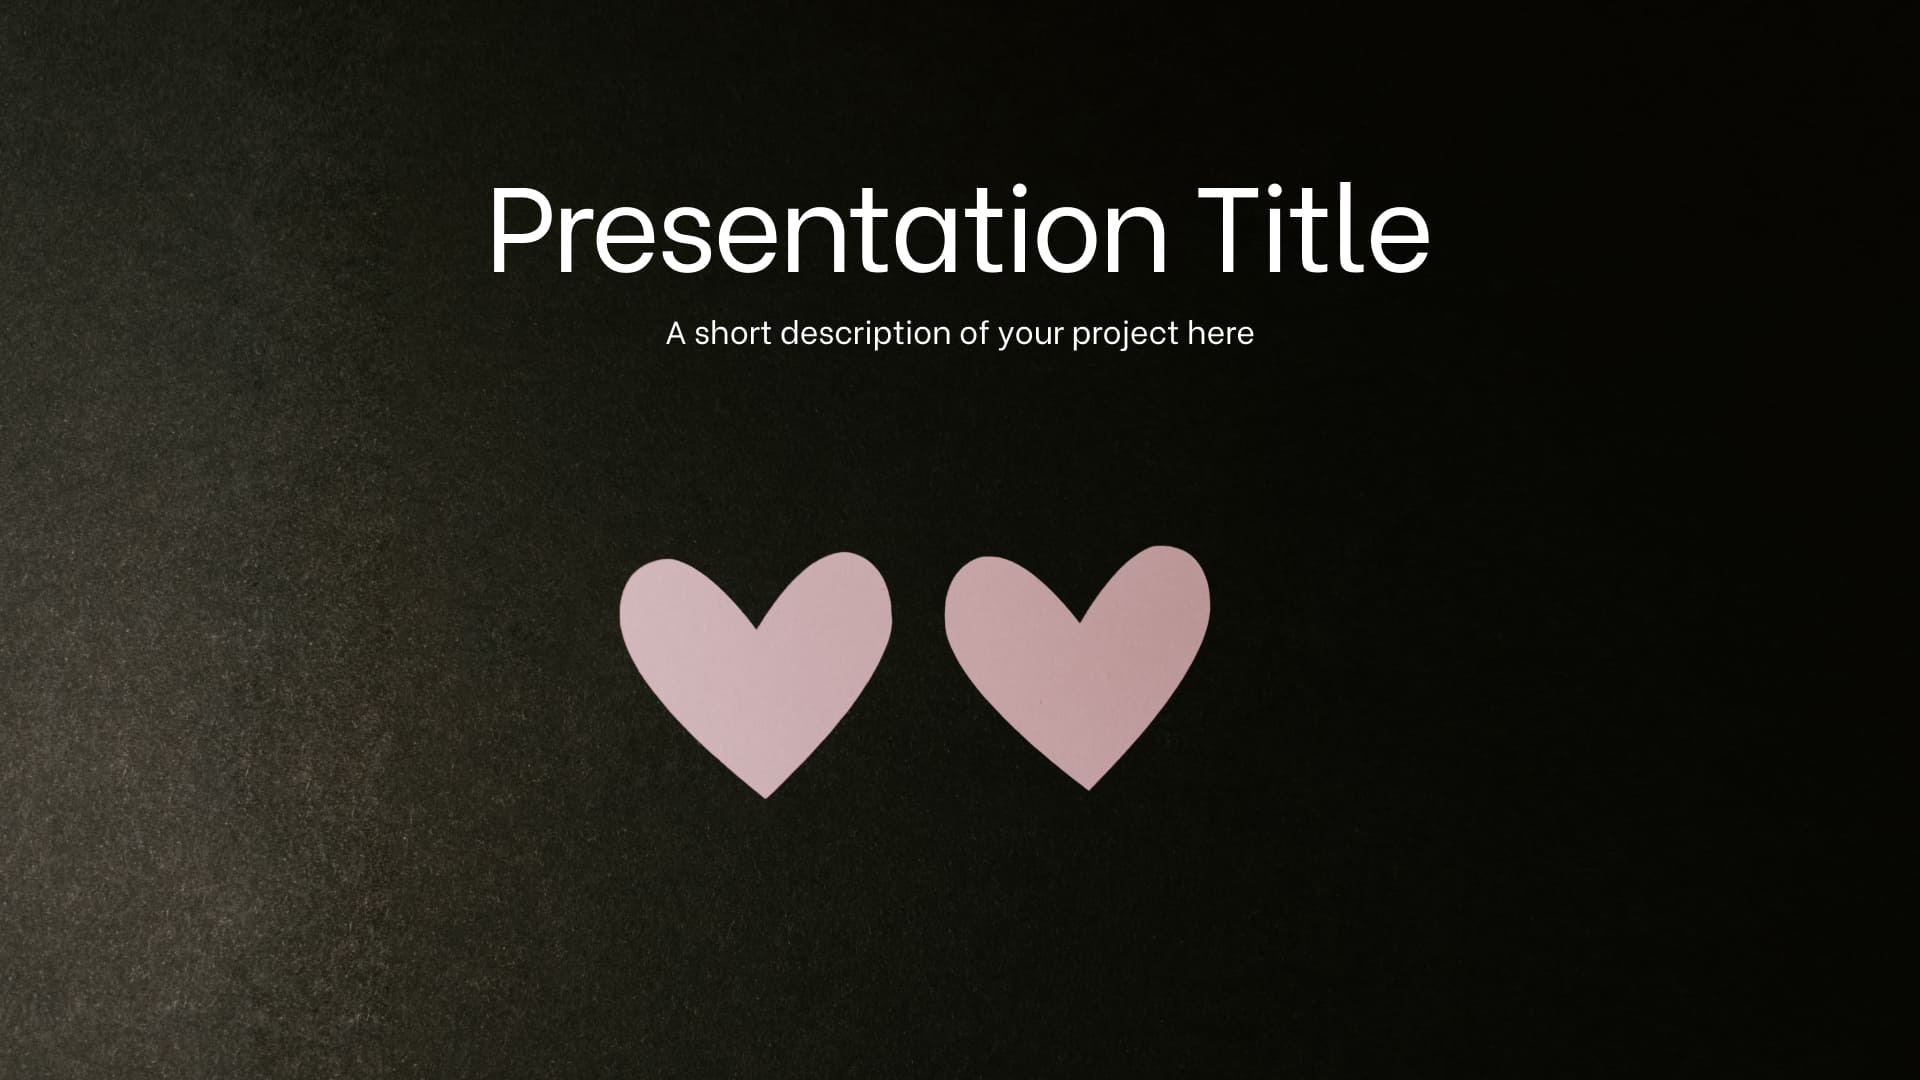 Title page of presentation slides.